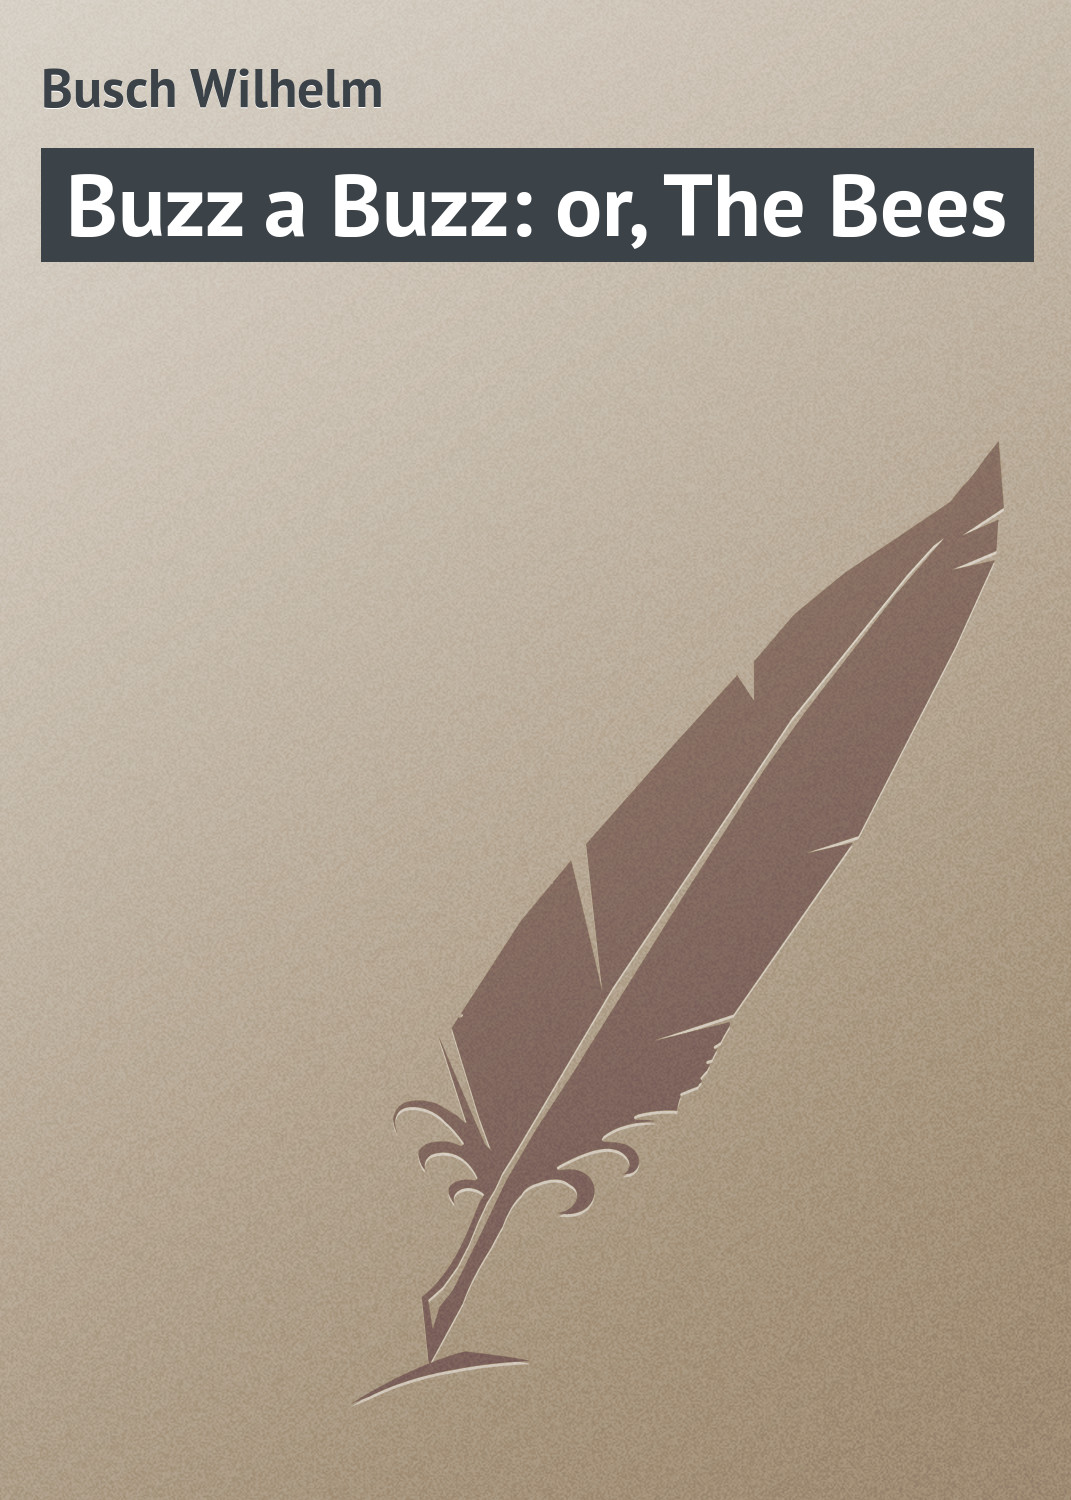 Книга Buzz a Buzz: or, The Bees из серии , созданная Wilhelm Busch, может относится к жанру Поэзия, Зарубежная классика, Зарубежные стихи. Стоимость электронной книги Buzz a Buzz: or, The Bees с идентификатором 23165075 составляет 5.99 руб.